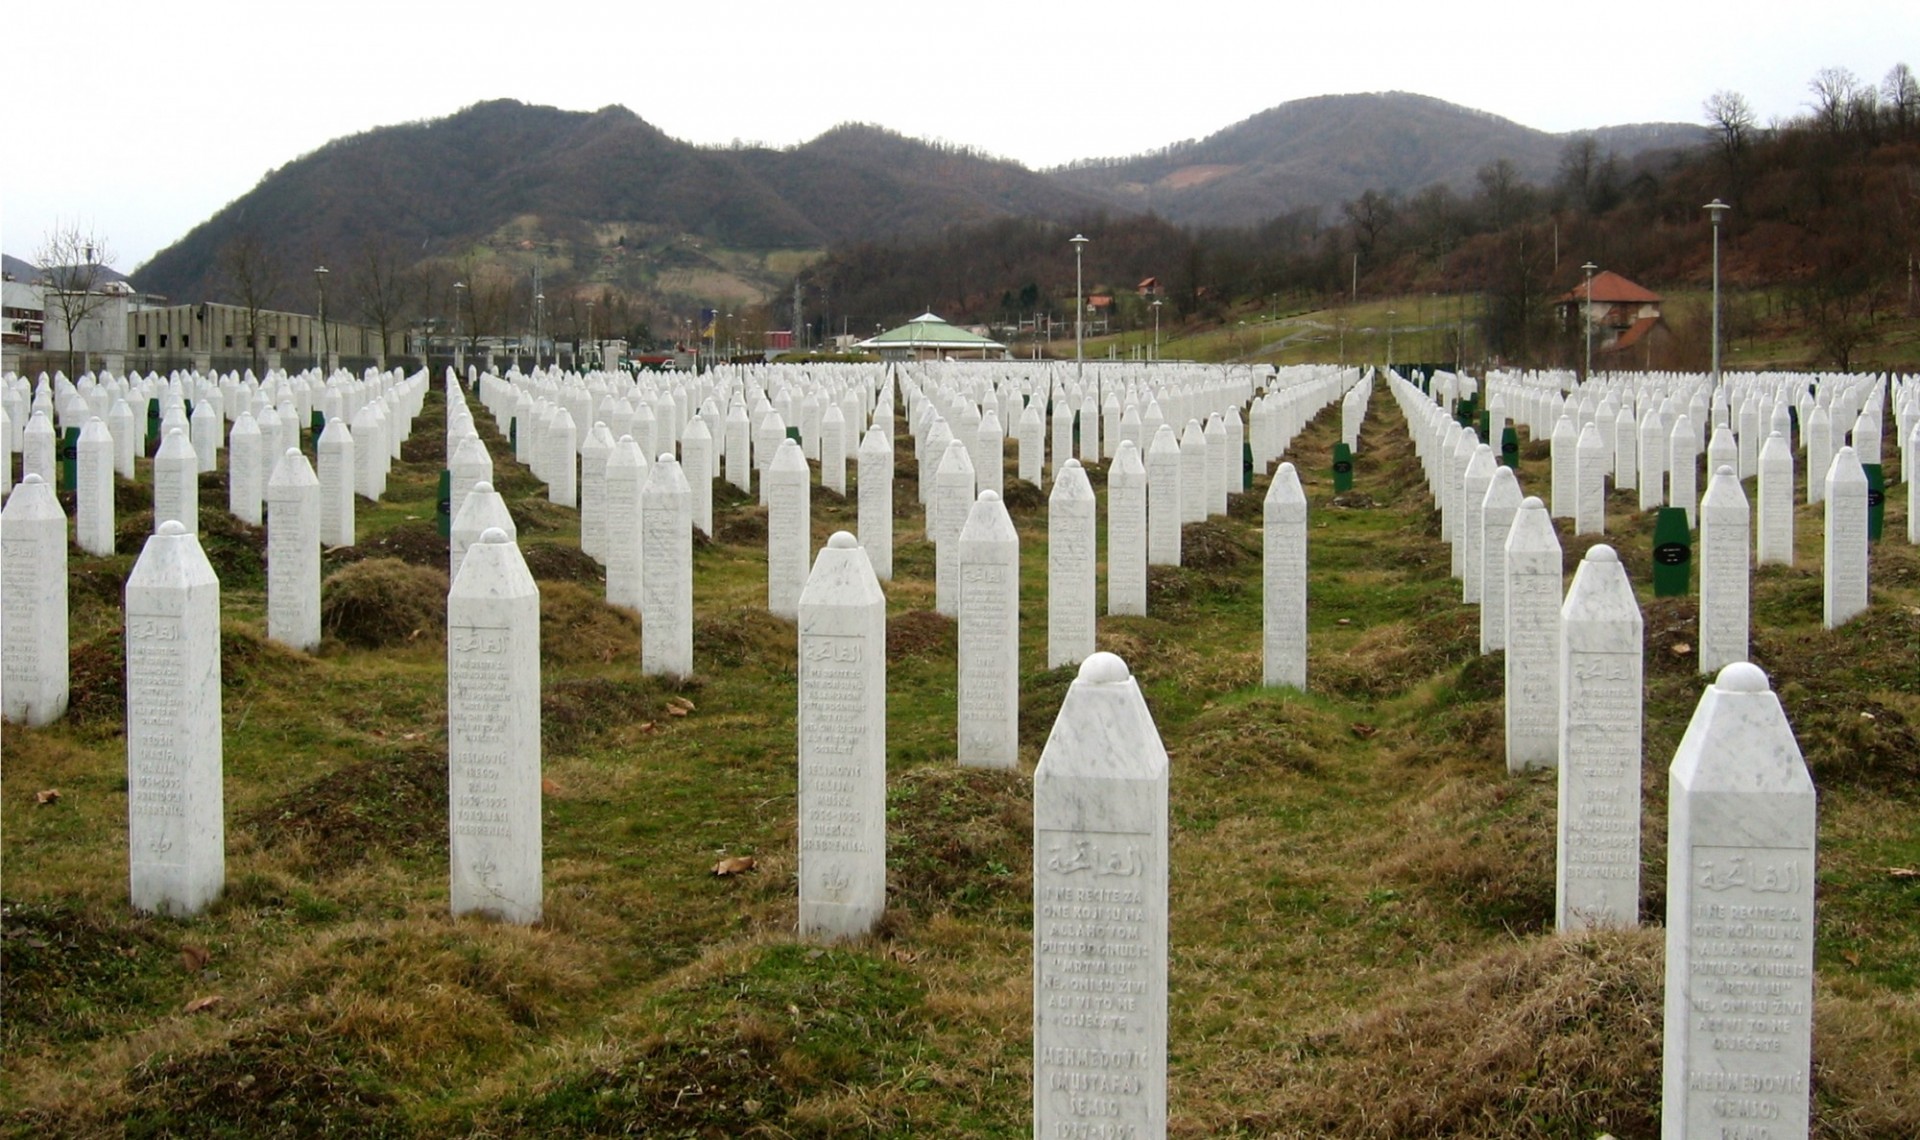 Gravestones at the Potočari genocide memorial near Srebrenica. Source: Wikimedia Commons, CC BY-SA 3.0.